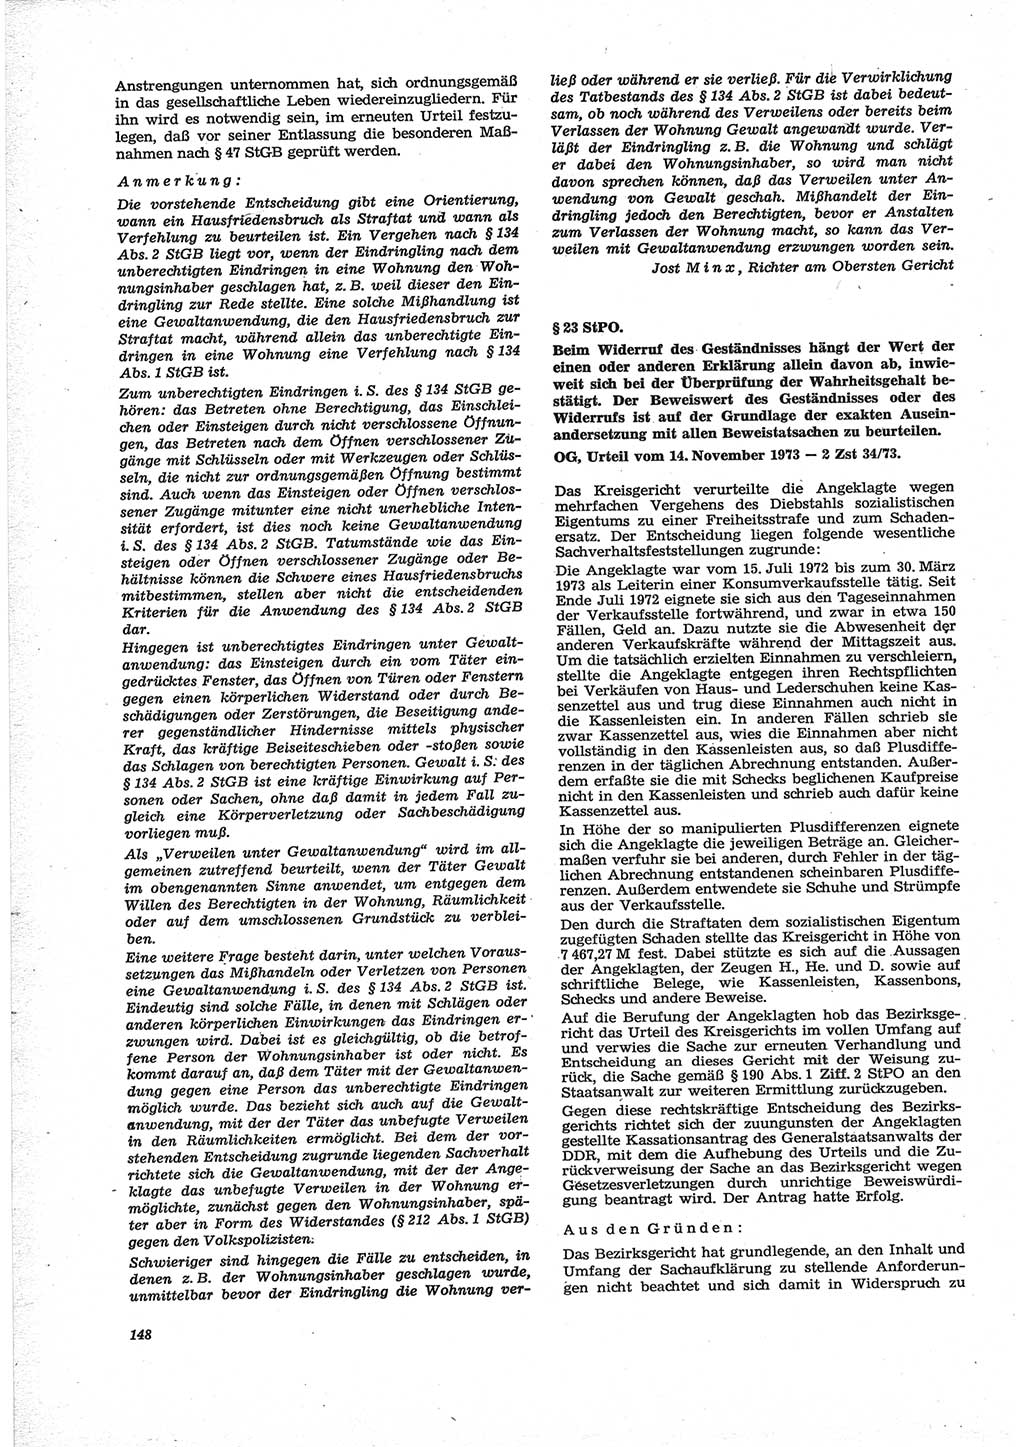 Neue Justiz (NJ), Zeitschrift für Recht und Rechtswissenschaft [Deutsche Demokratische Republik (DDR)], 28. Jahrgang 1974, Seite 148 (NJ DDR 1974, S. 148)